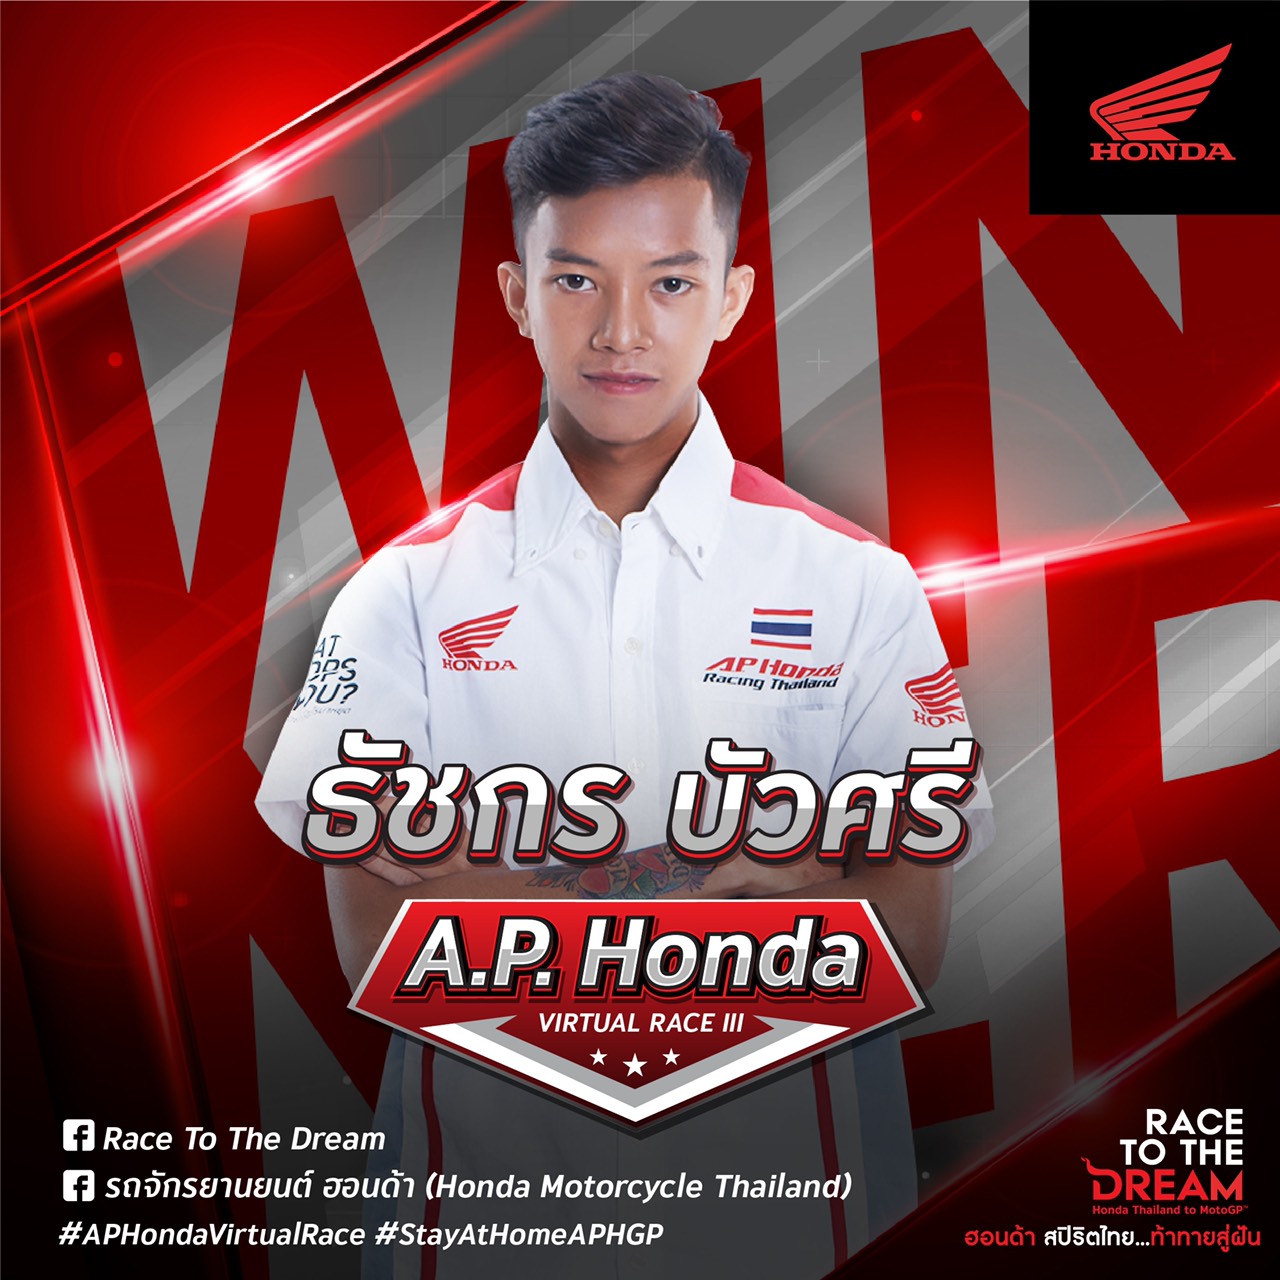 ก้องส์-ธัชกร คว้าแชมป์สนาม 3 ผงาดจ่าฝูง A.P. Honda Virtual Race